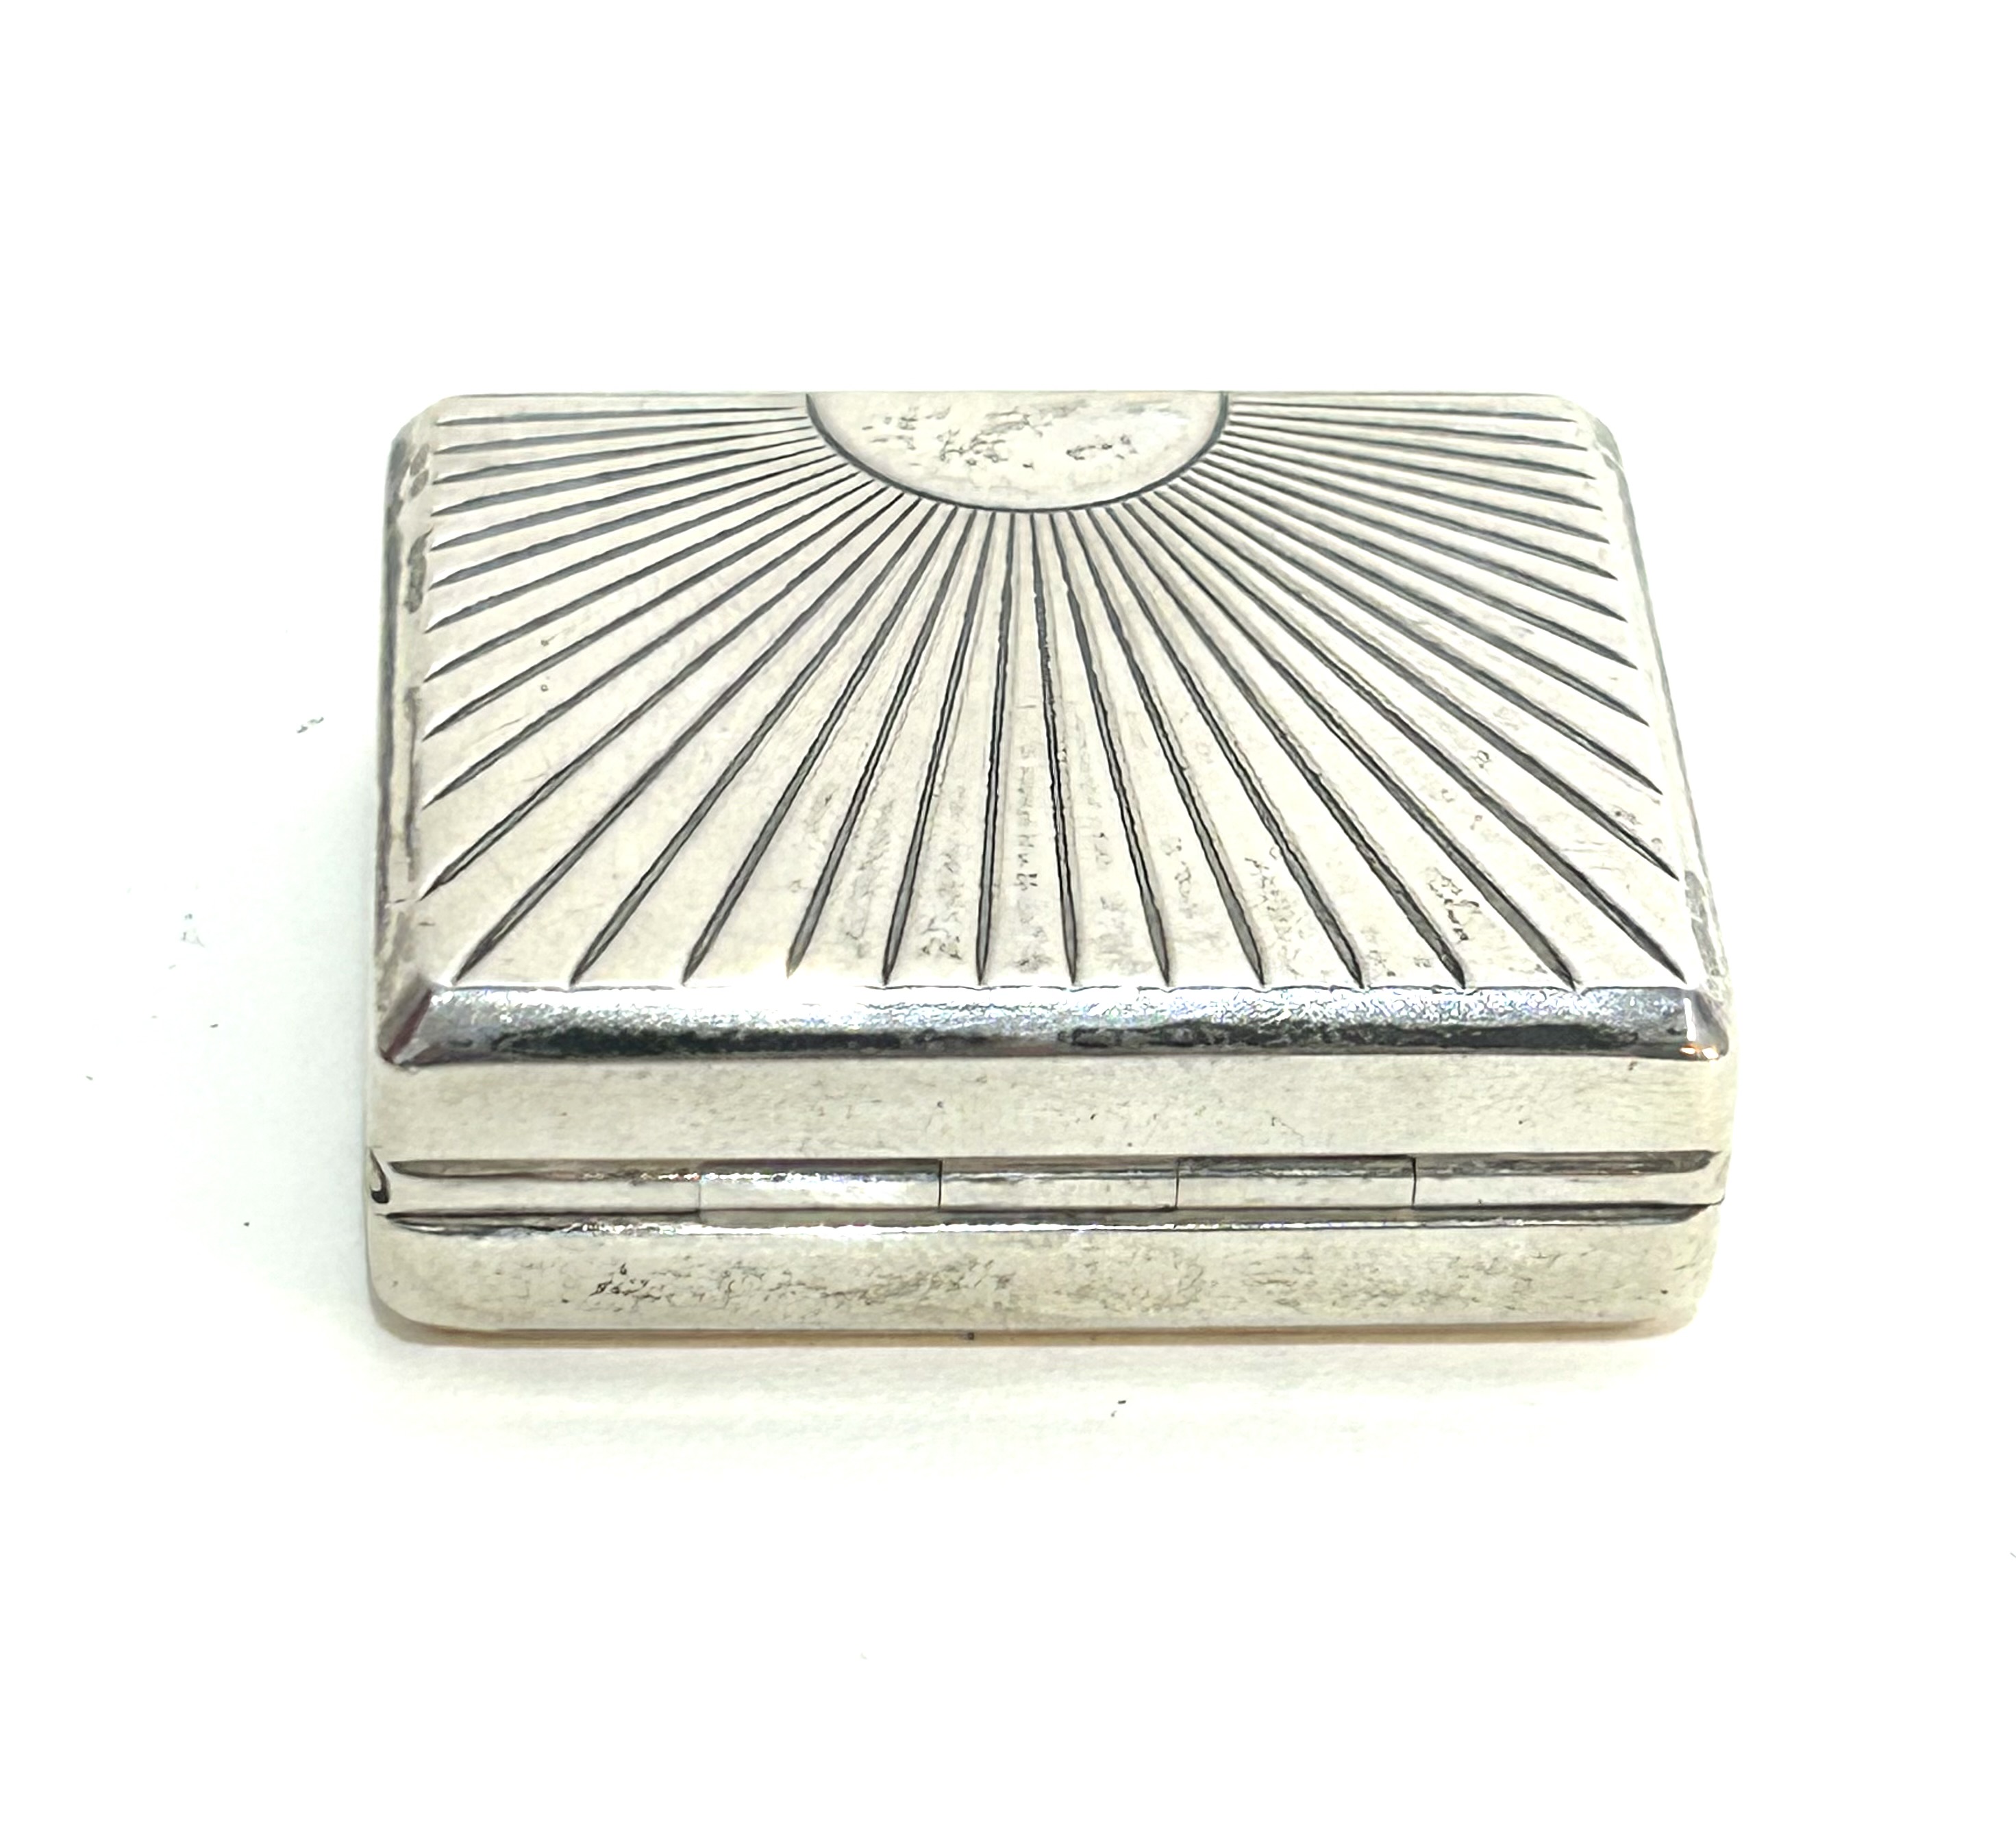 Stříbrná miniaturní dózička či kapesní lékovka